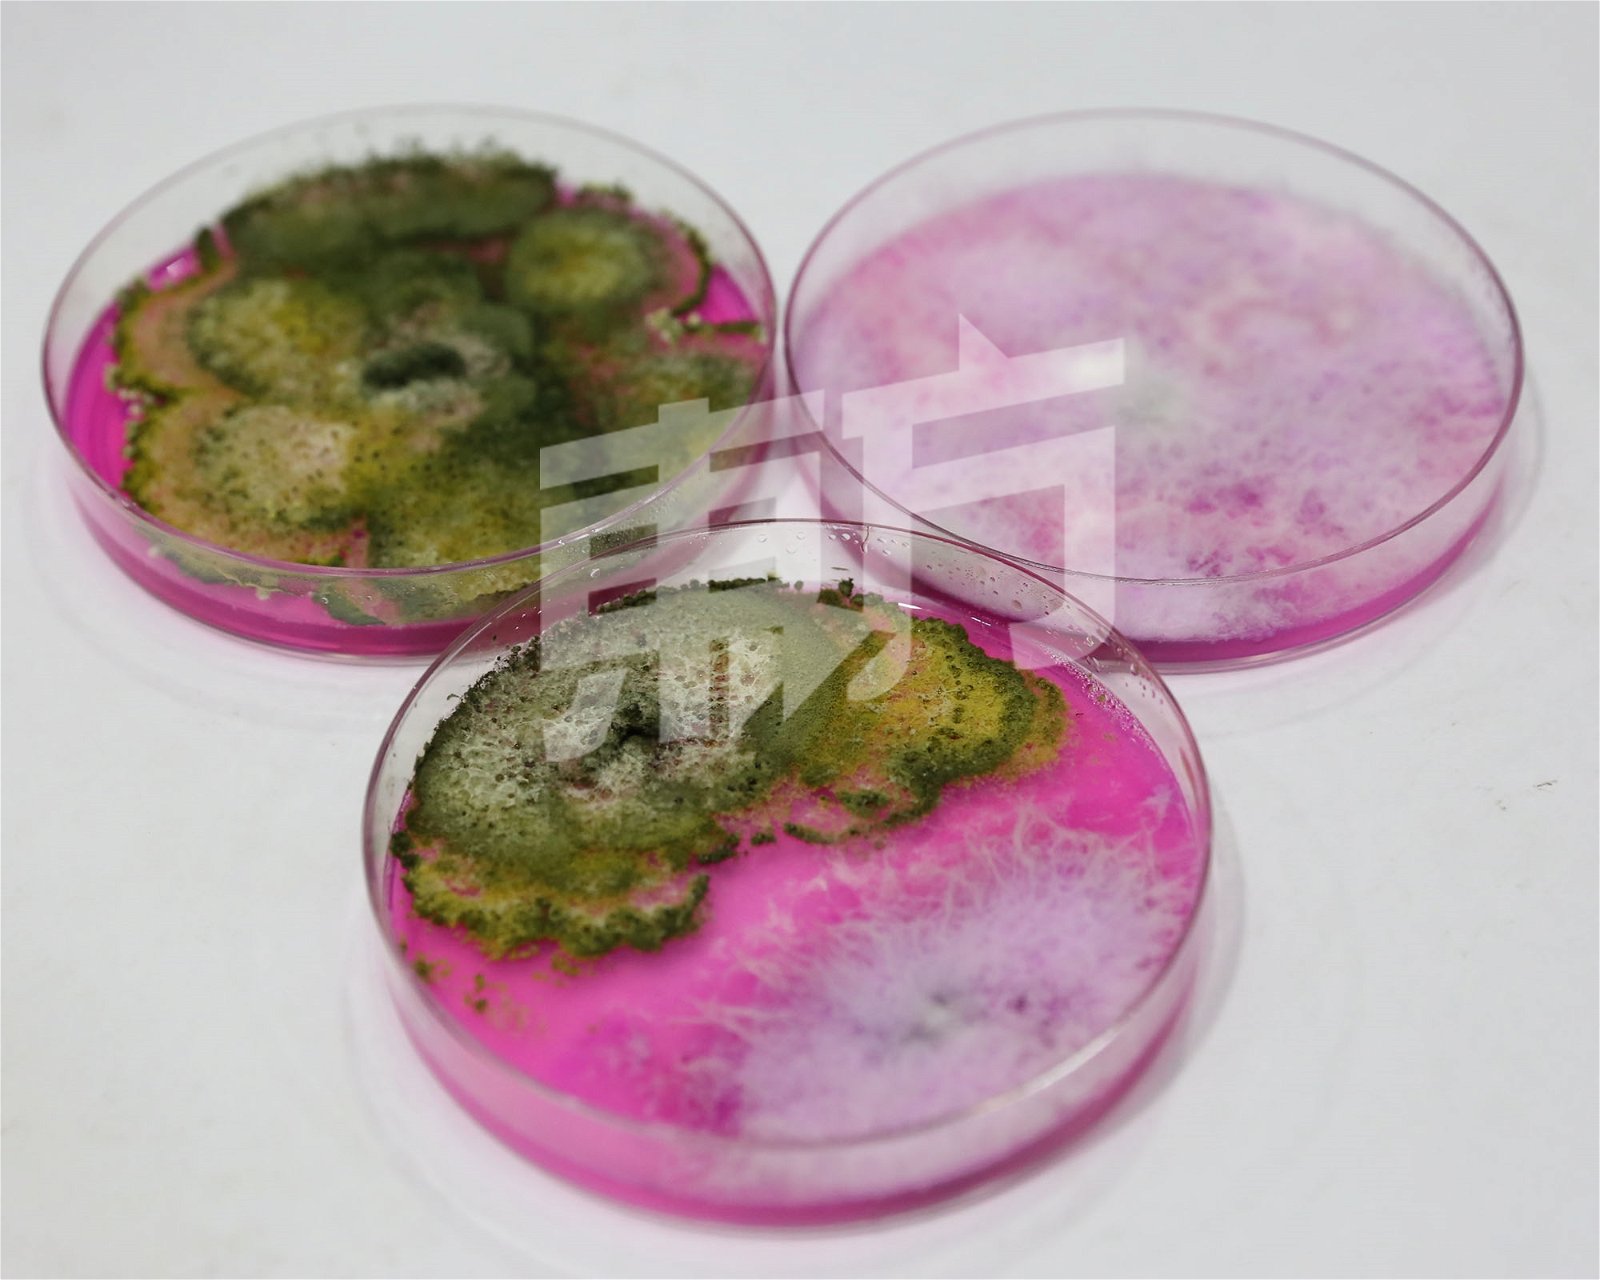 利用生物防治原理，黄绿色的木霉菌有效抑制白色的有害的镰刀菌生长，从而达到防止镰刀菌危害农作物的功能。摄影：刘维杰